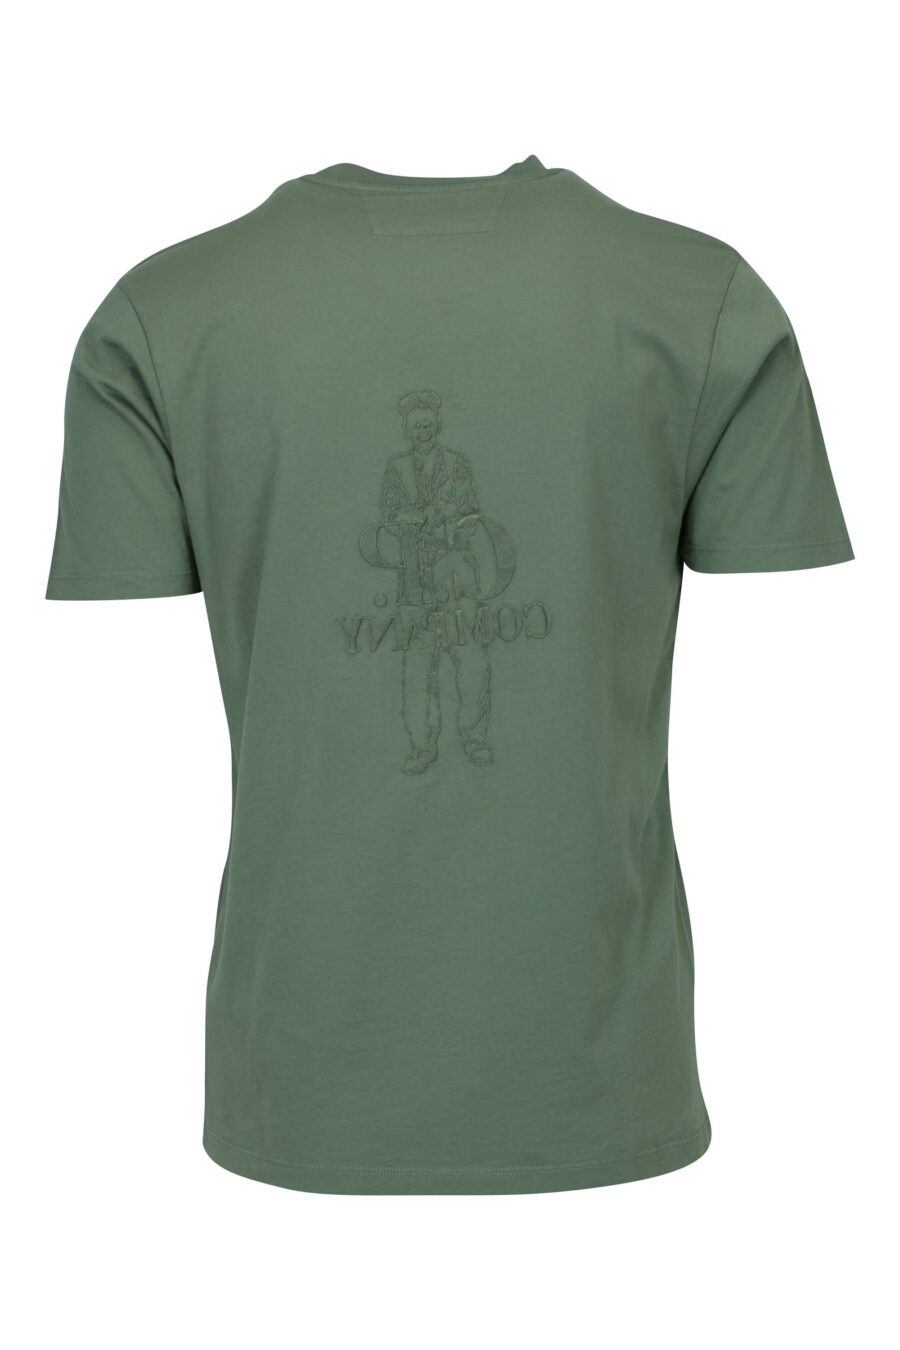 Camiseta verde grisáceo con maxilogo marinero y logo "cp" - 7620943776539 1